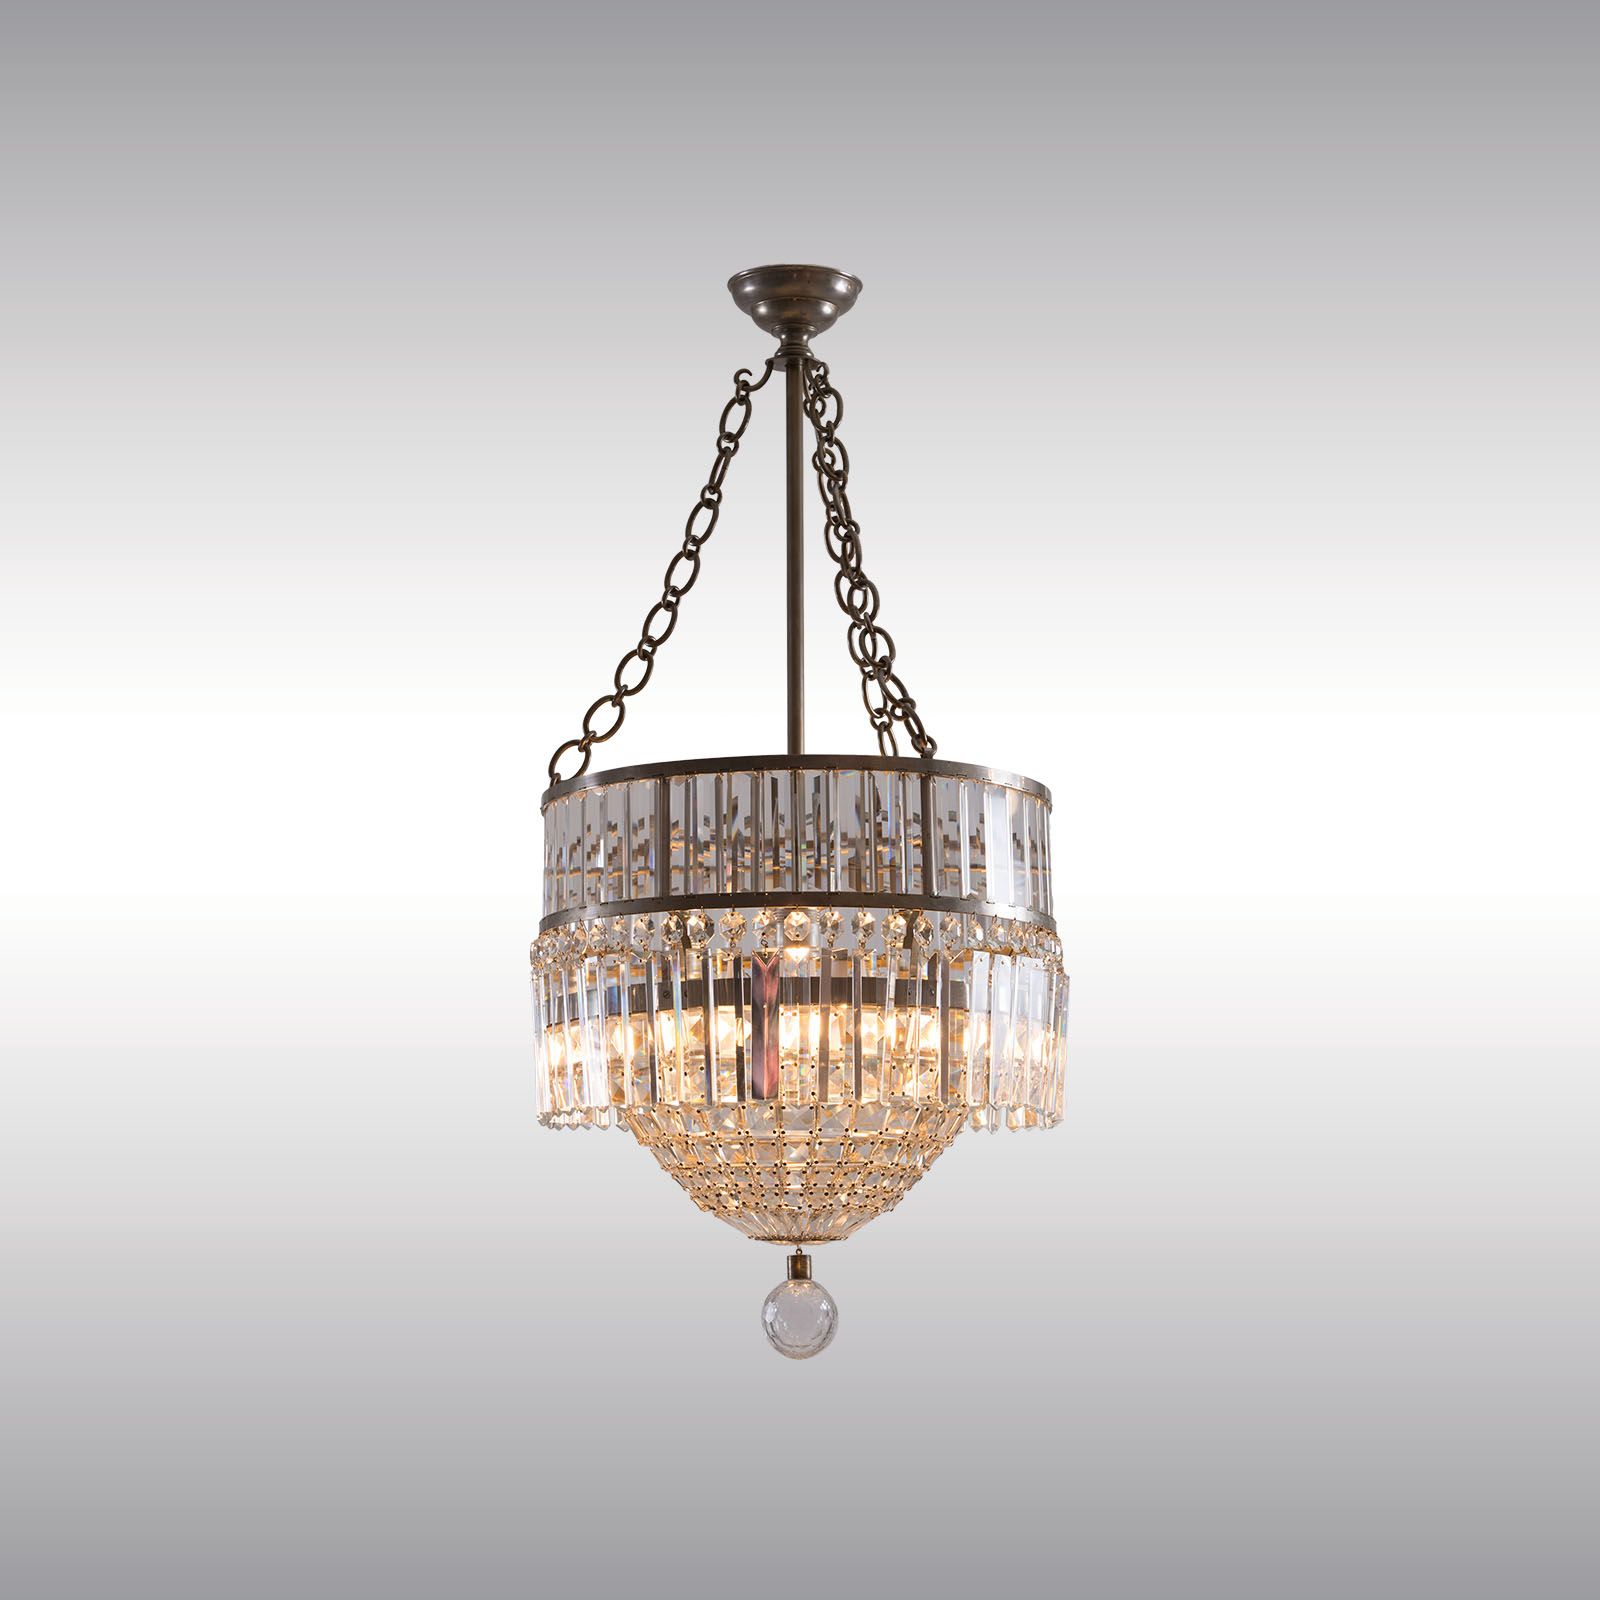 WOKA LAMPS VIENNA - OrderNr.: 60050|Magnificent Chandelier - Design: Bakalowits